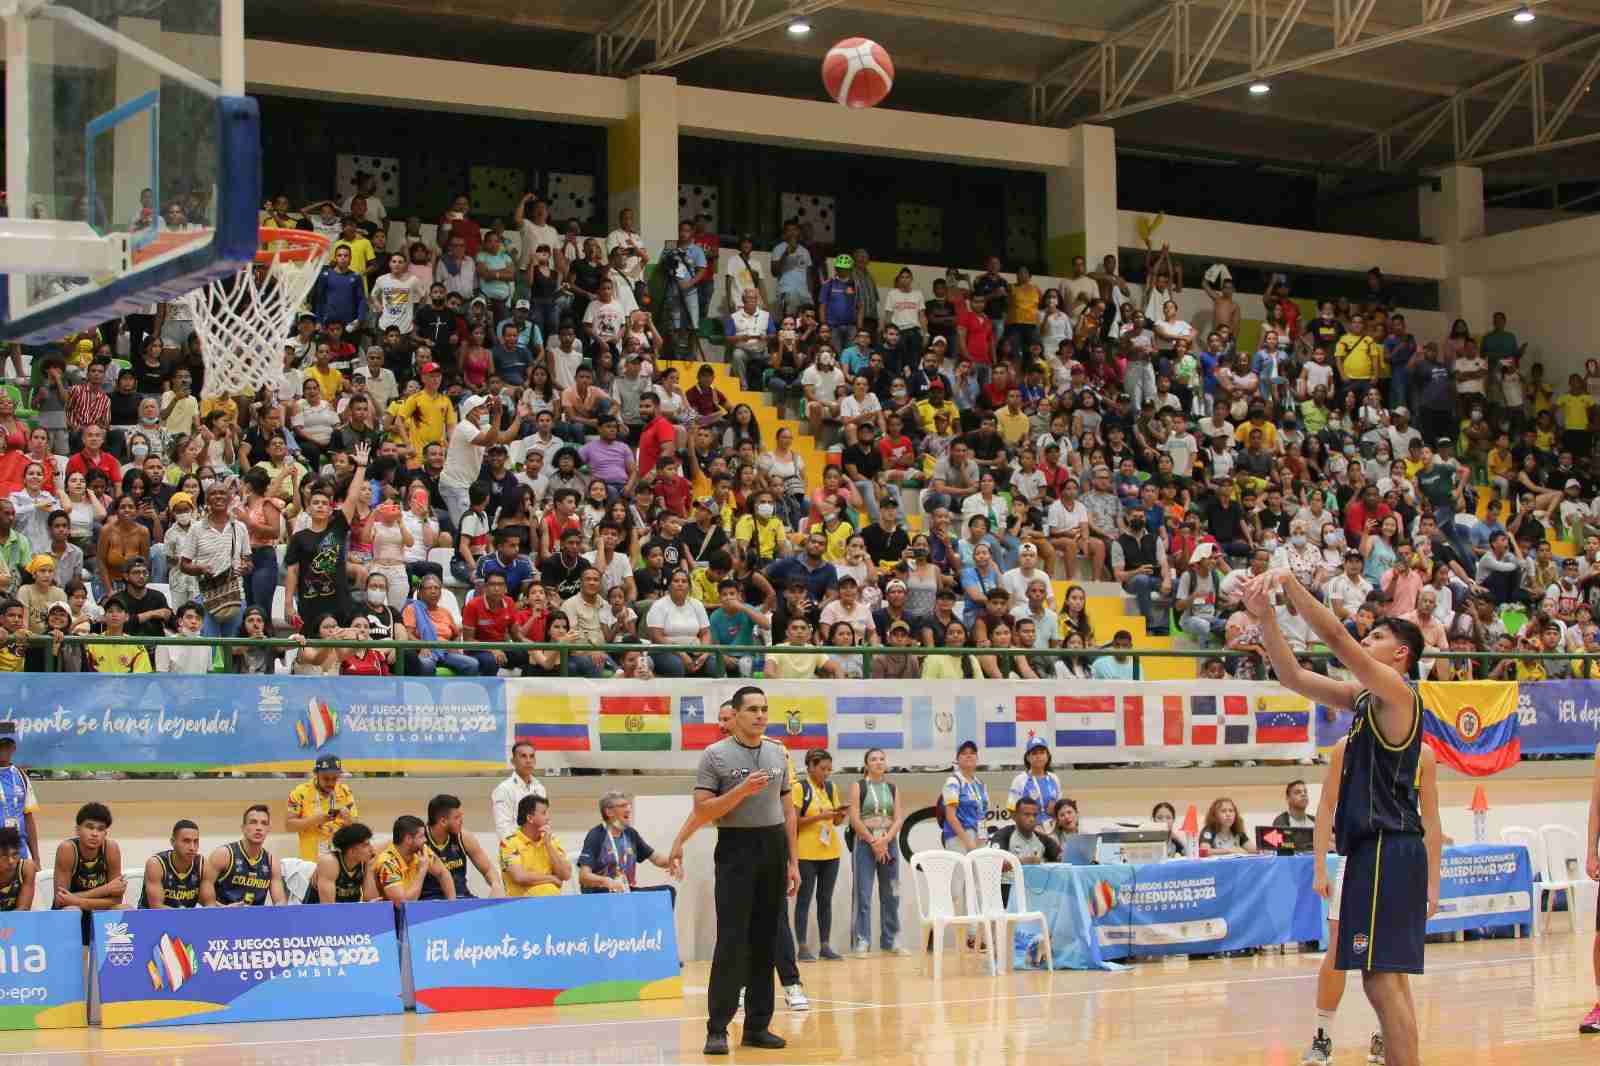 Los primeros Juegos Intermunicipales tendrán como escenarios los mismos utilizados durante los pasados Juegos Bolivarianos 2022.
